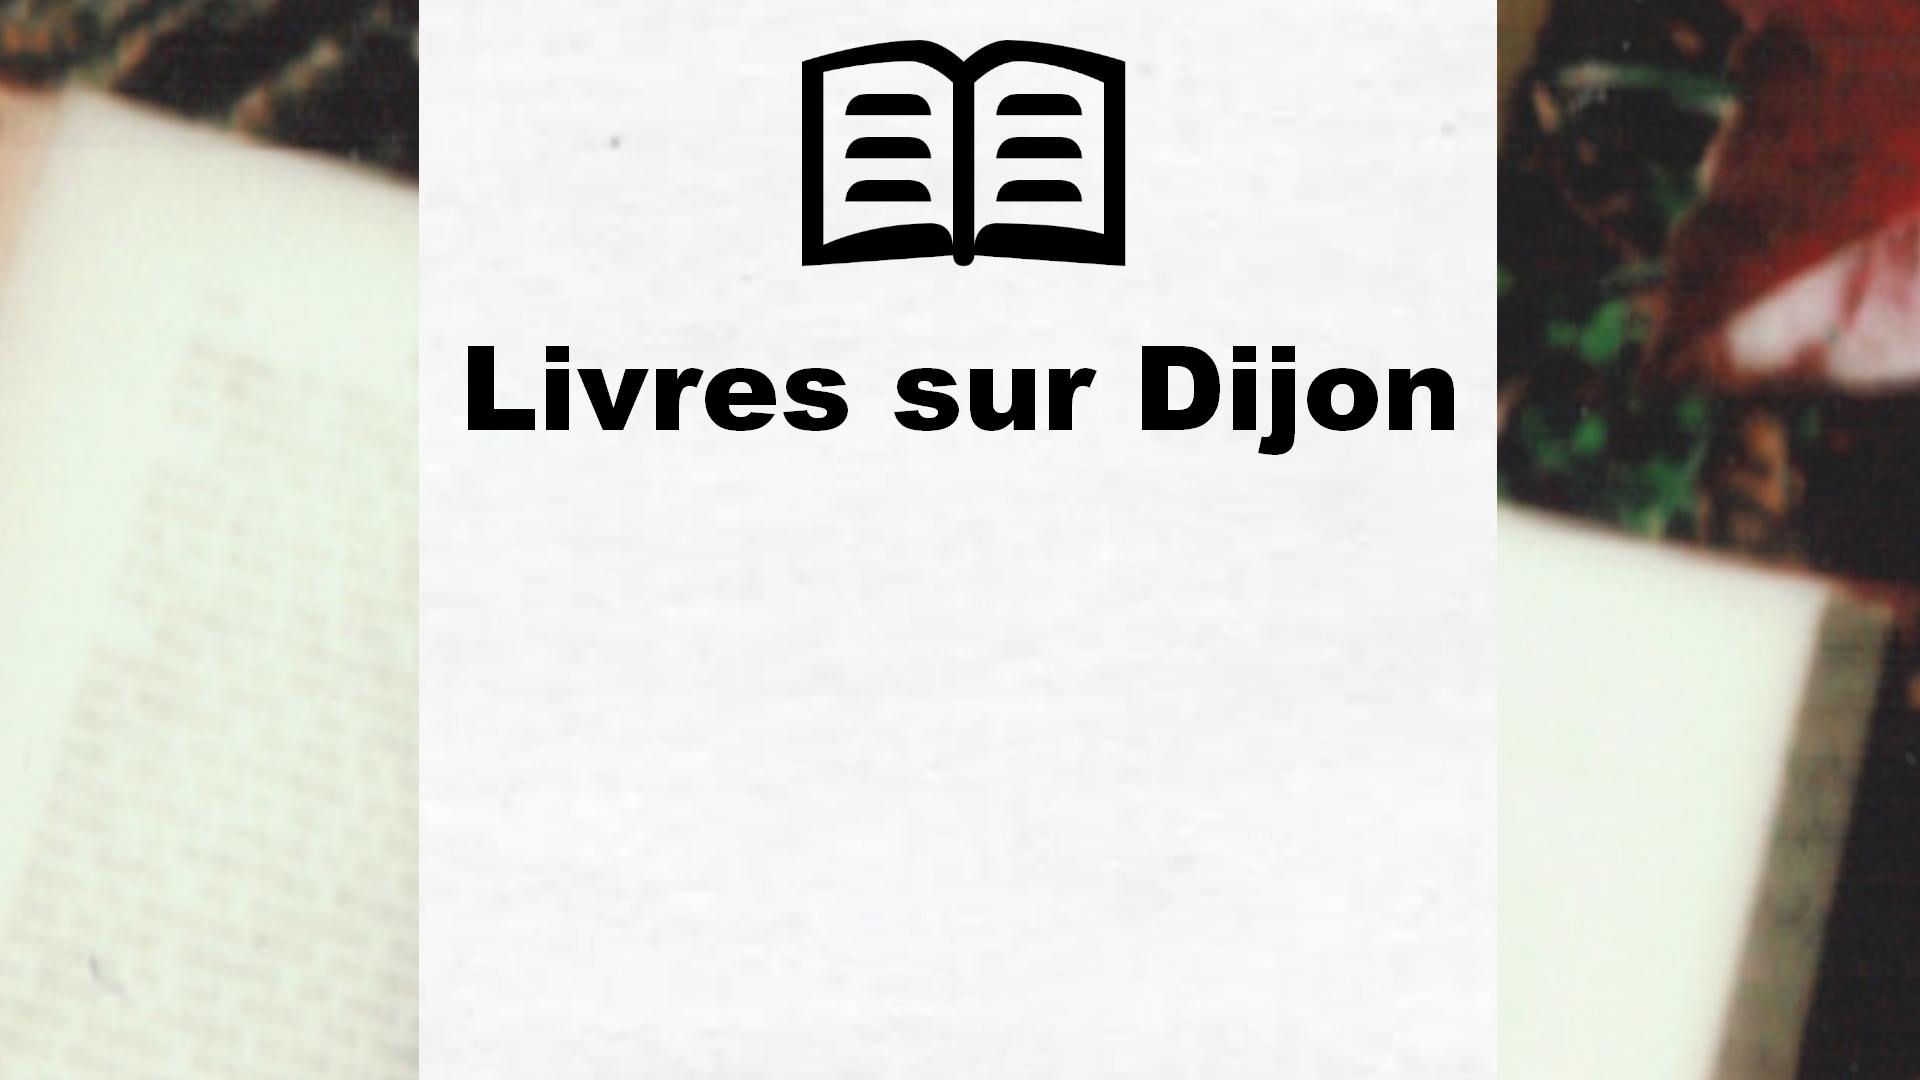 Livres sur Dijon